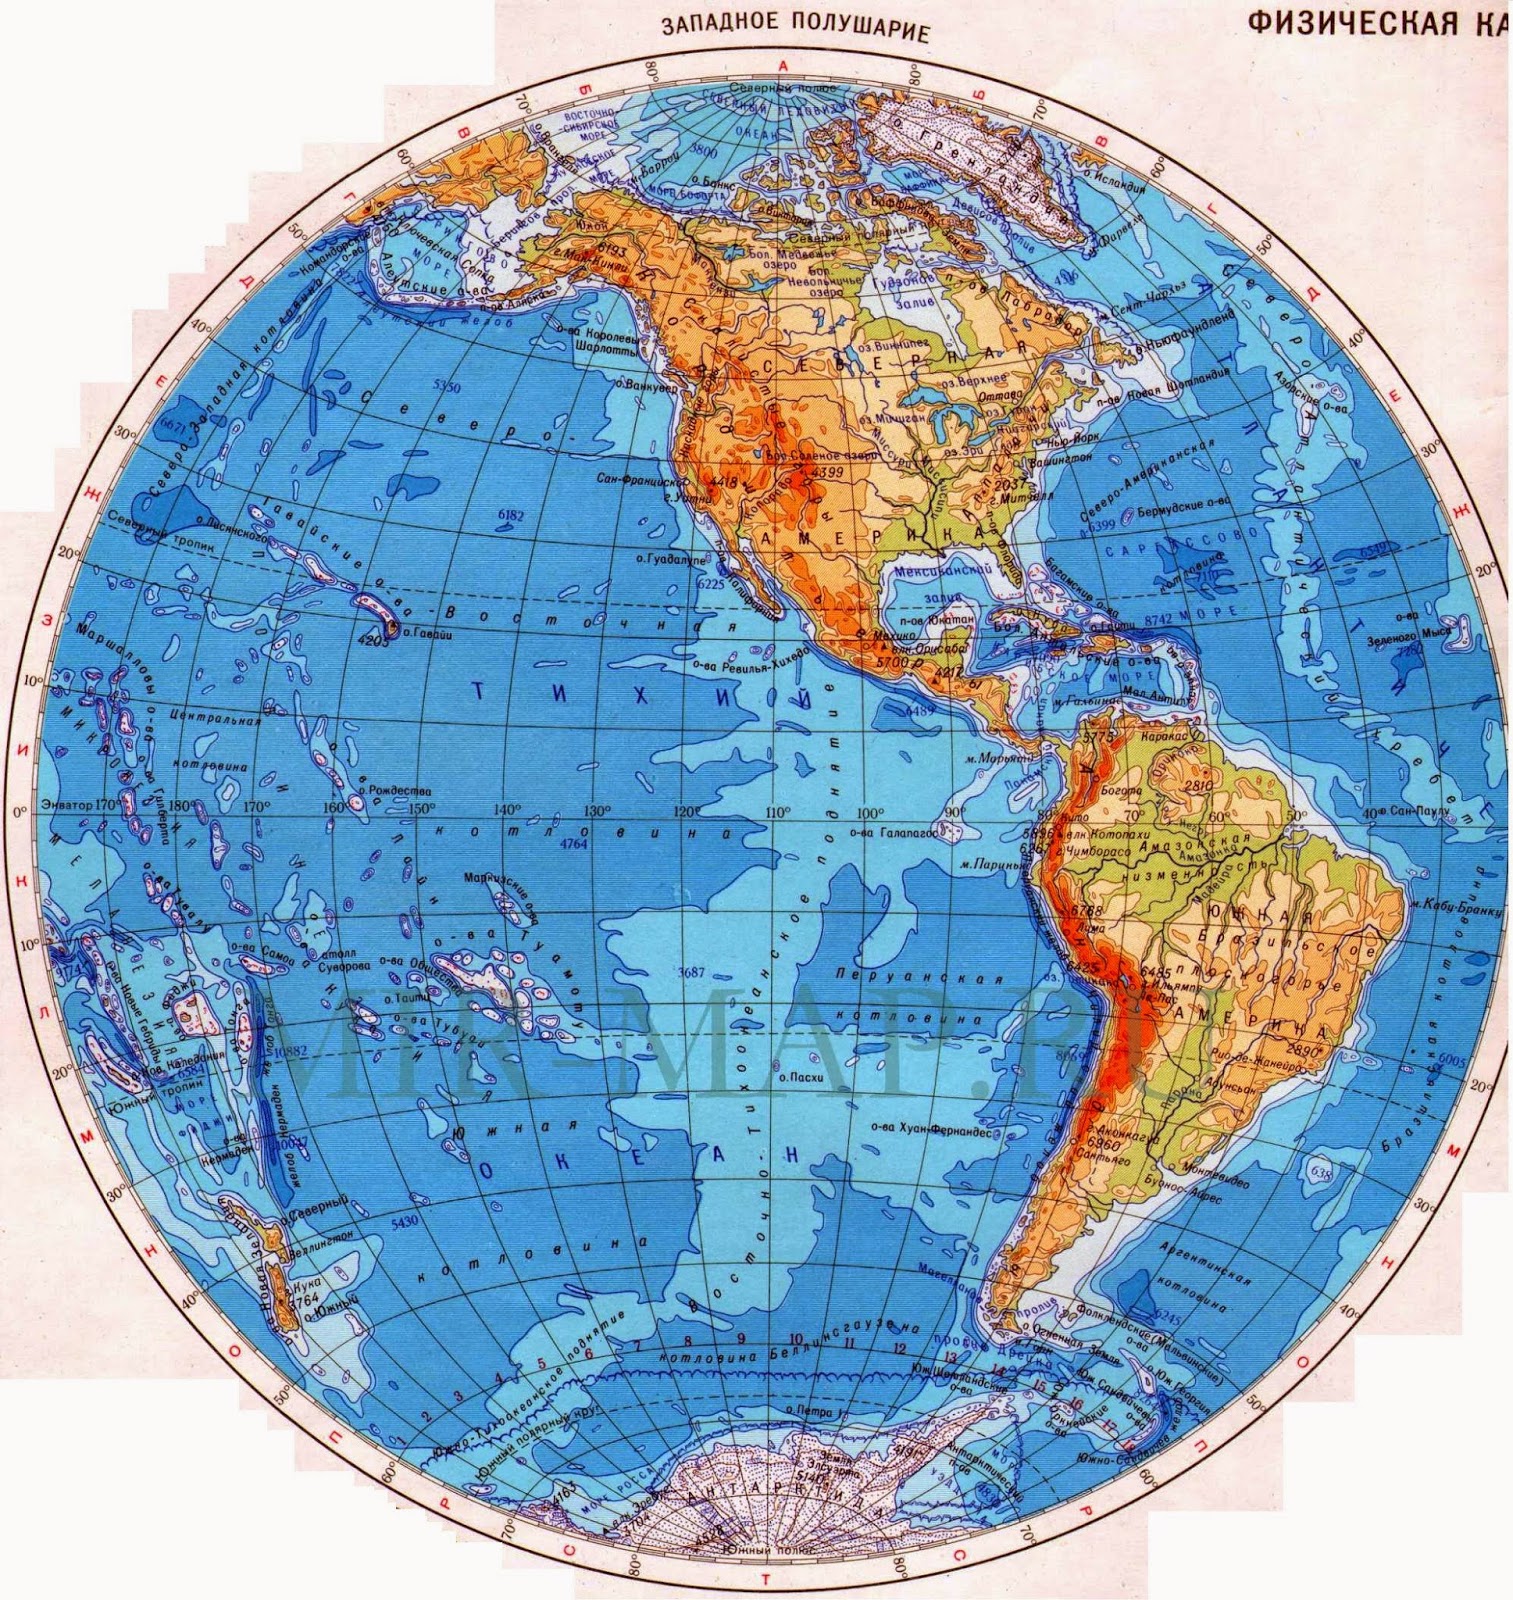 Евразия в восточном полушарии. Физическая карта Западного полушария. Карта полушарий Западное полушарие. Карта Западного полушария земли. Физическая карта полушарий Западное полушарие Восточное полушарие.